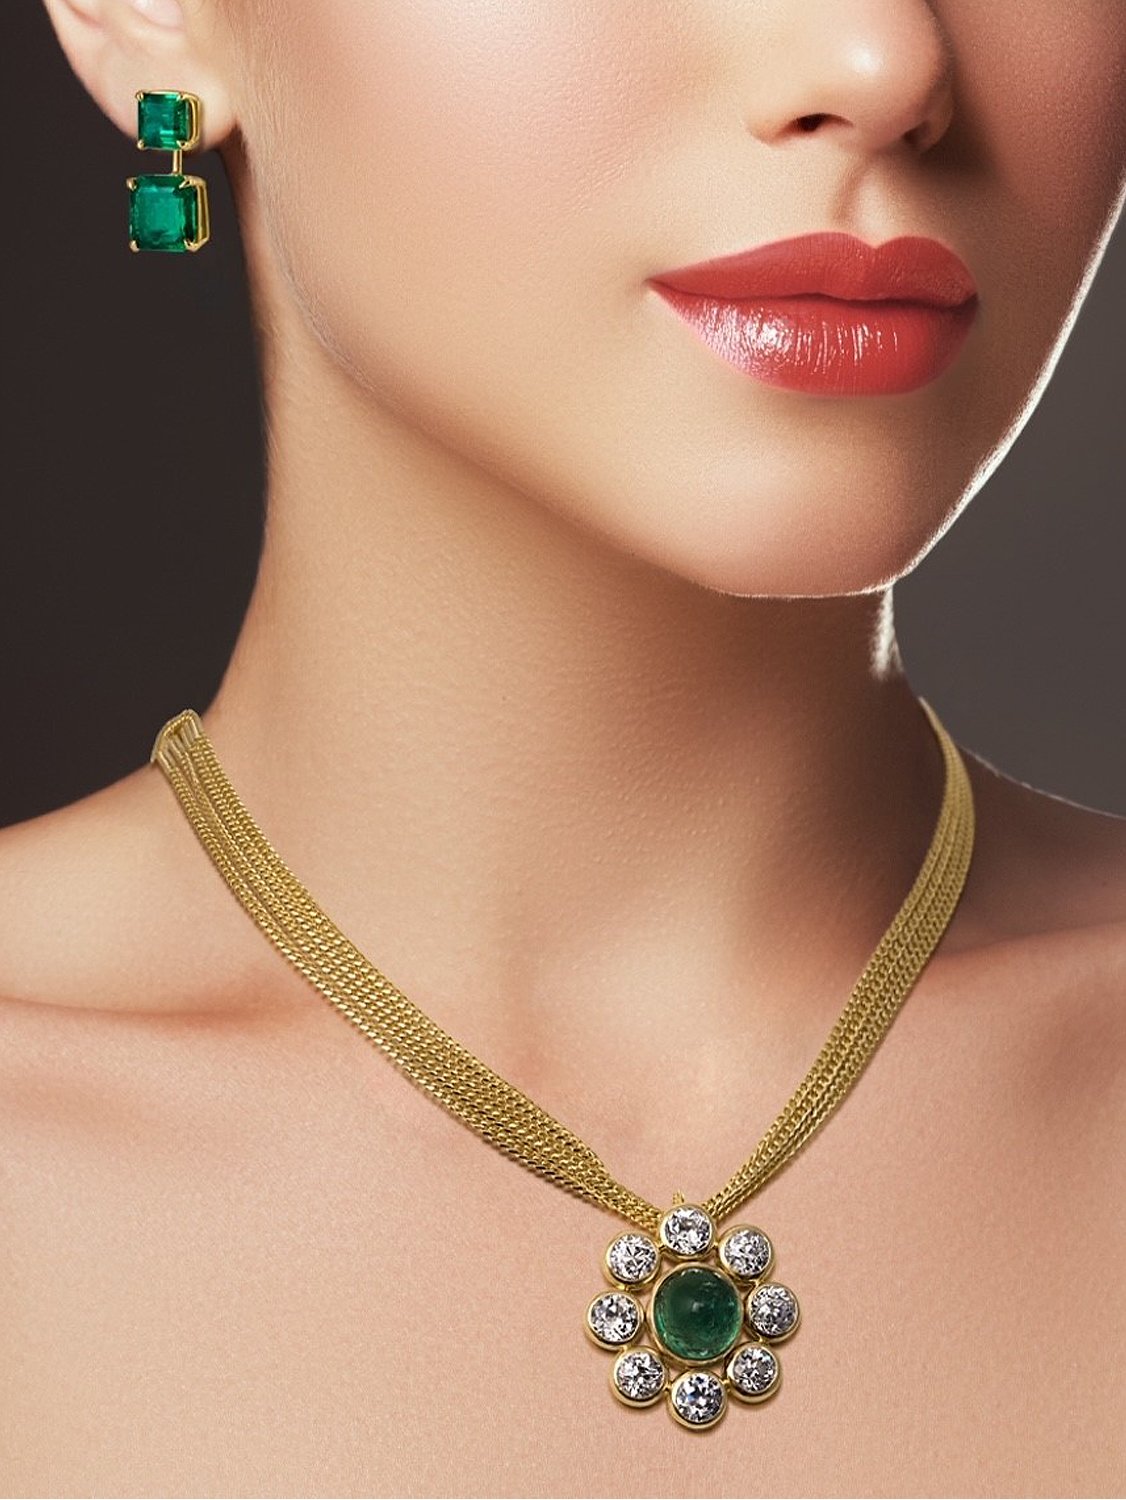 22 Carats Pear cut Colombian Emerald Stud Earrings 18k Gold